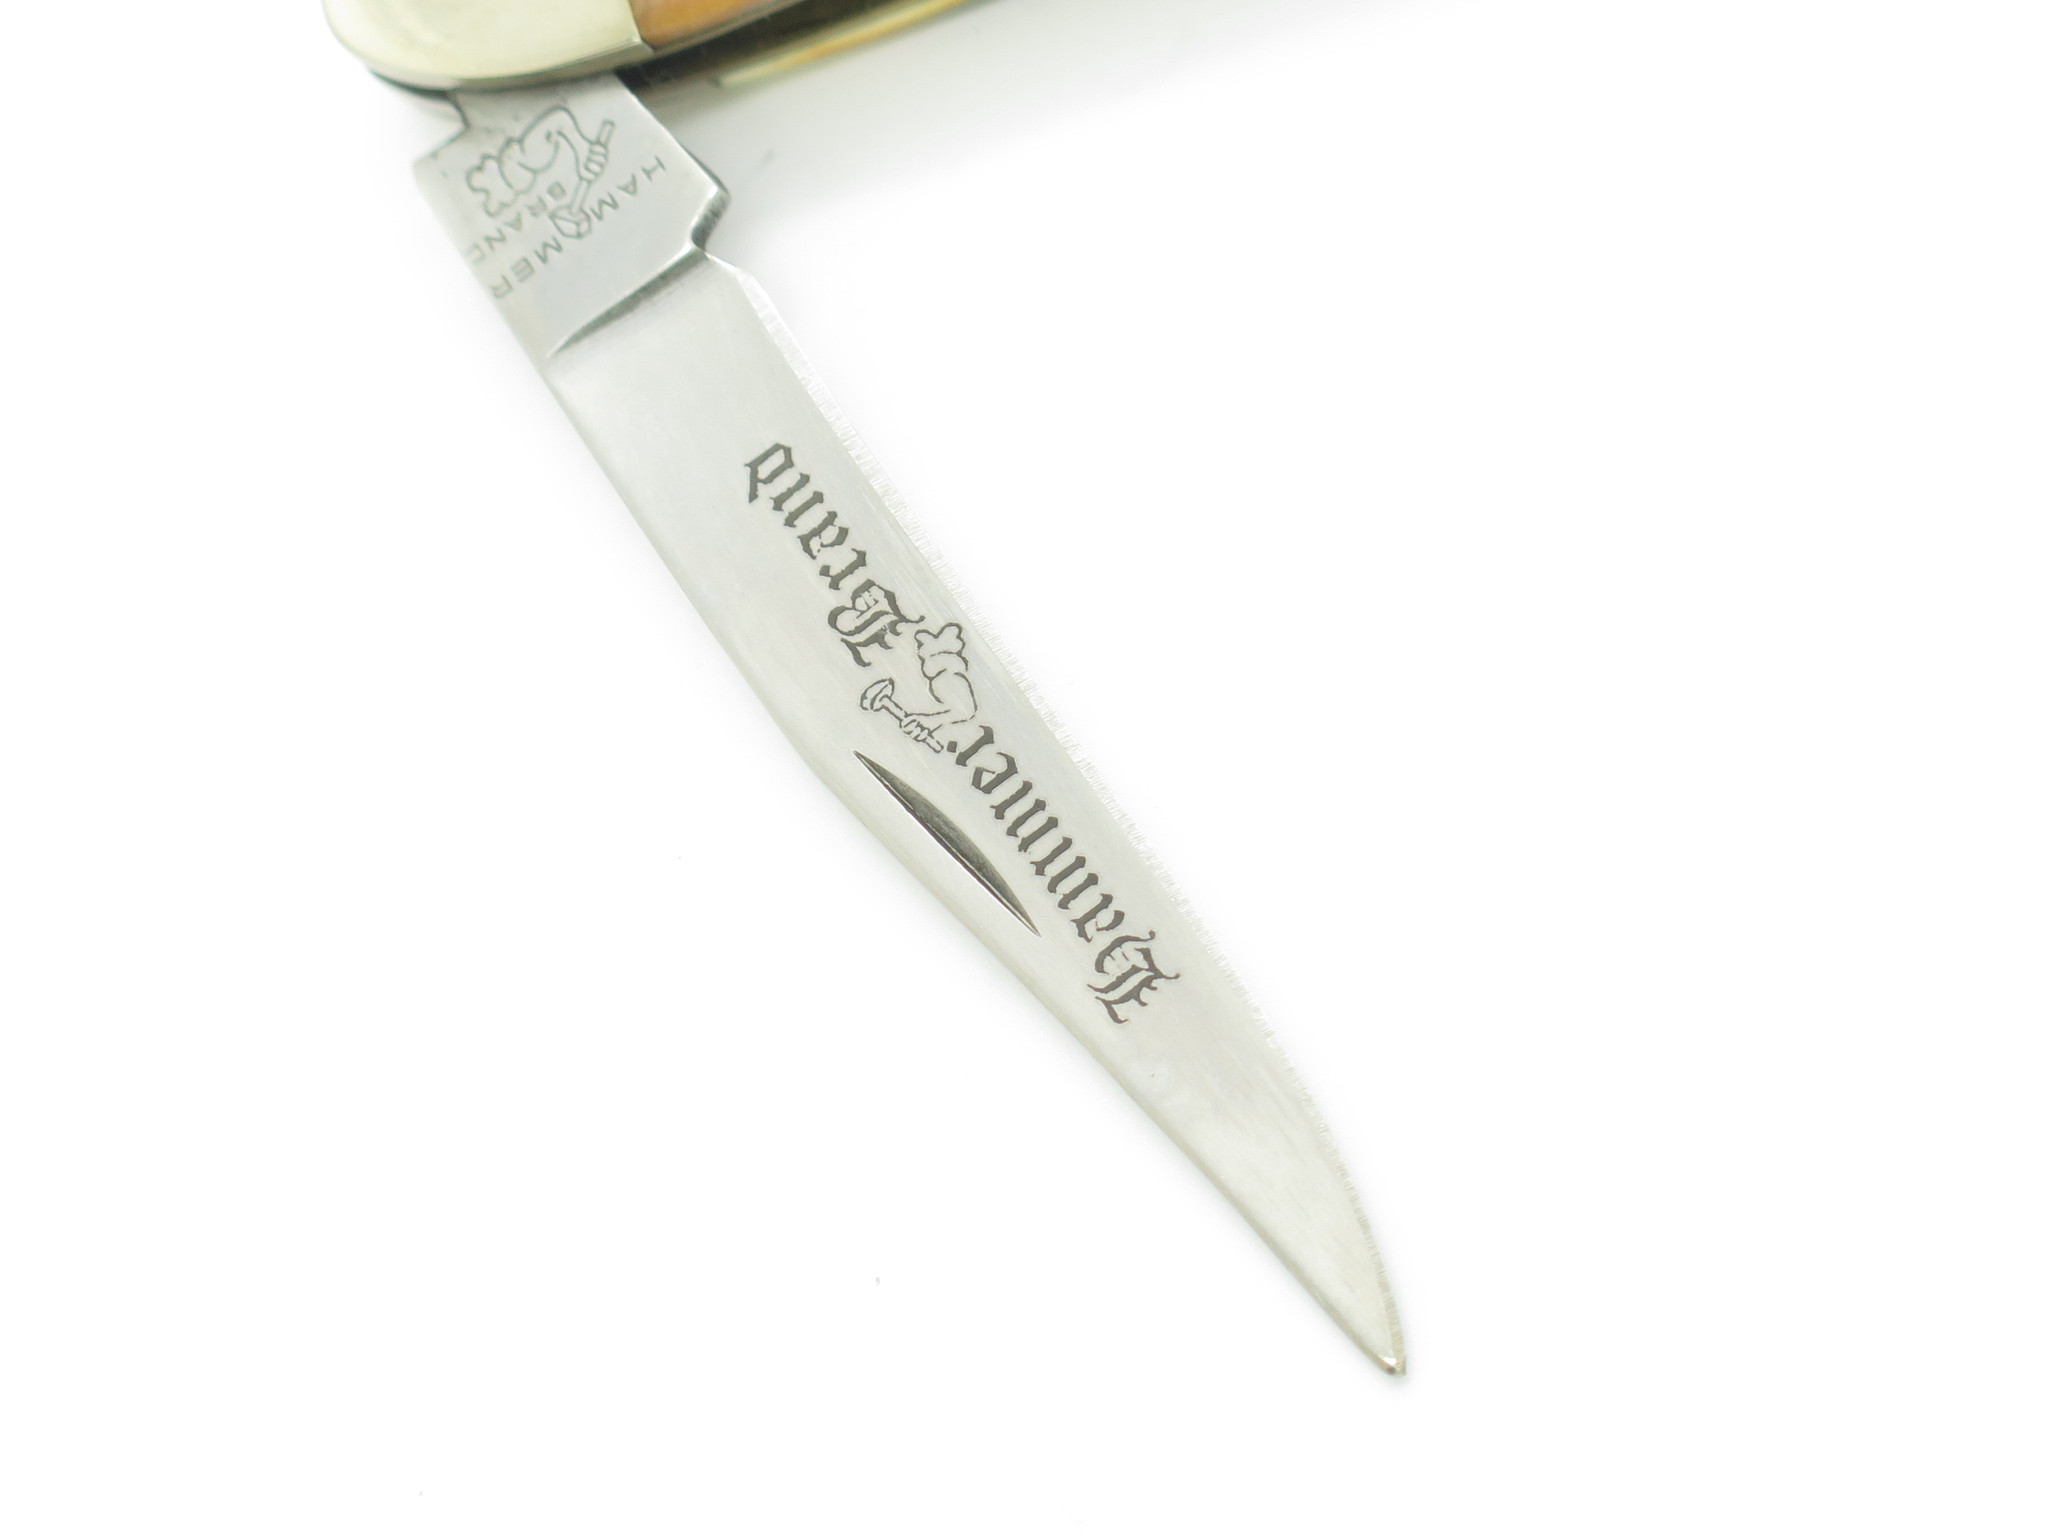 Vintage HAMMER BRAND Pocket Knife 1 Single Blade (as-is)